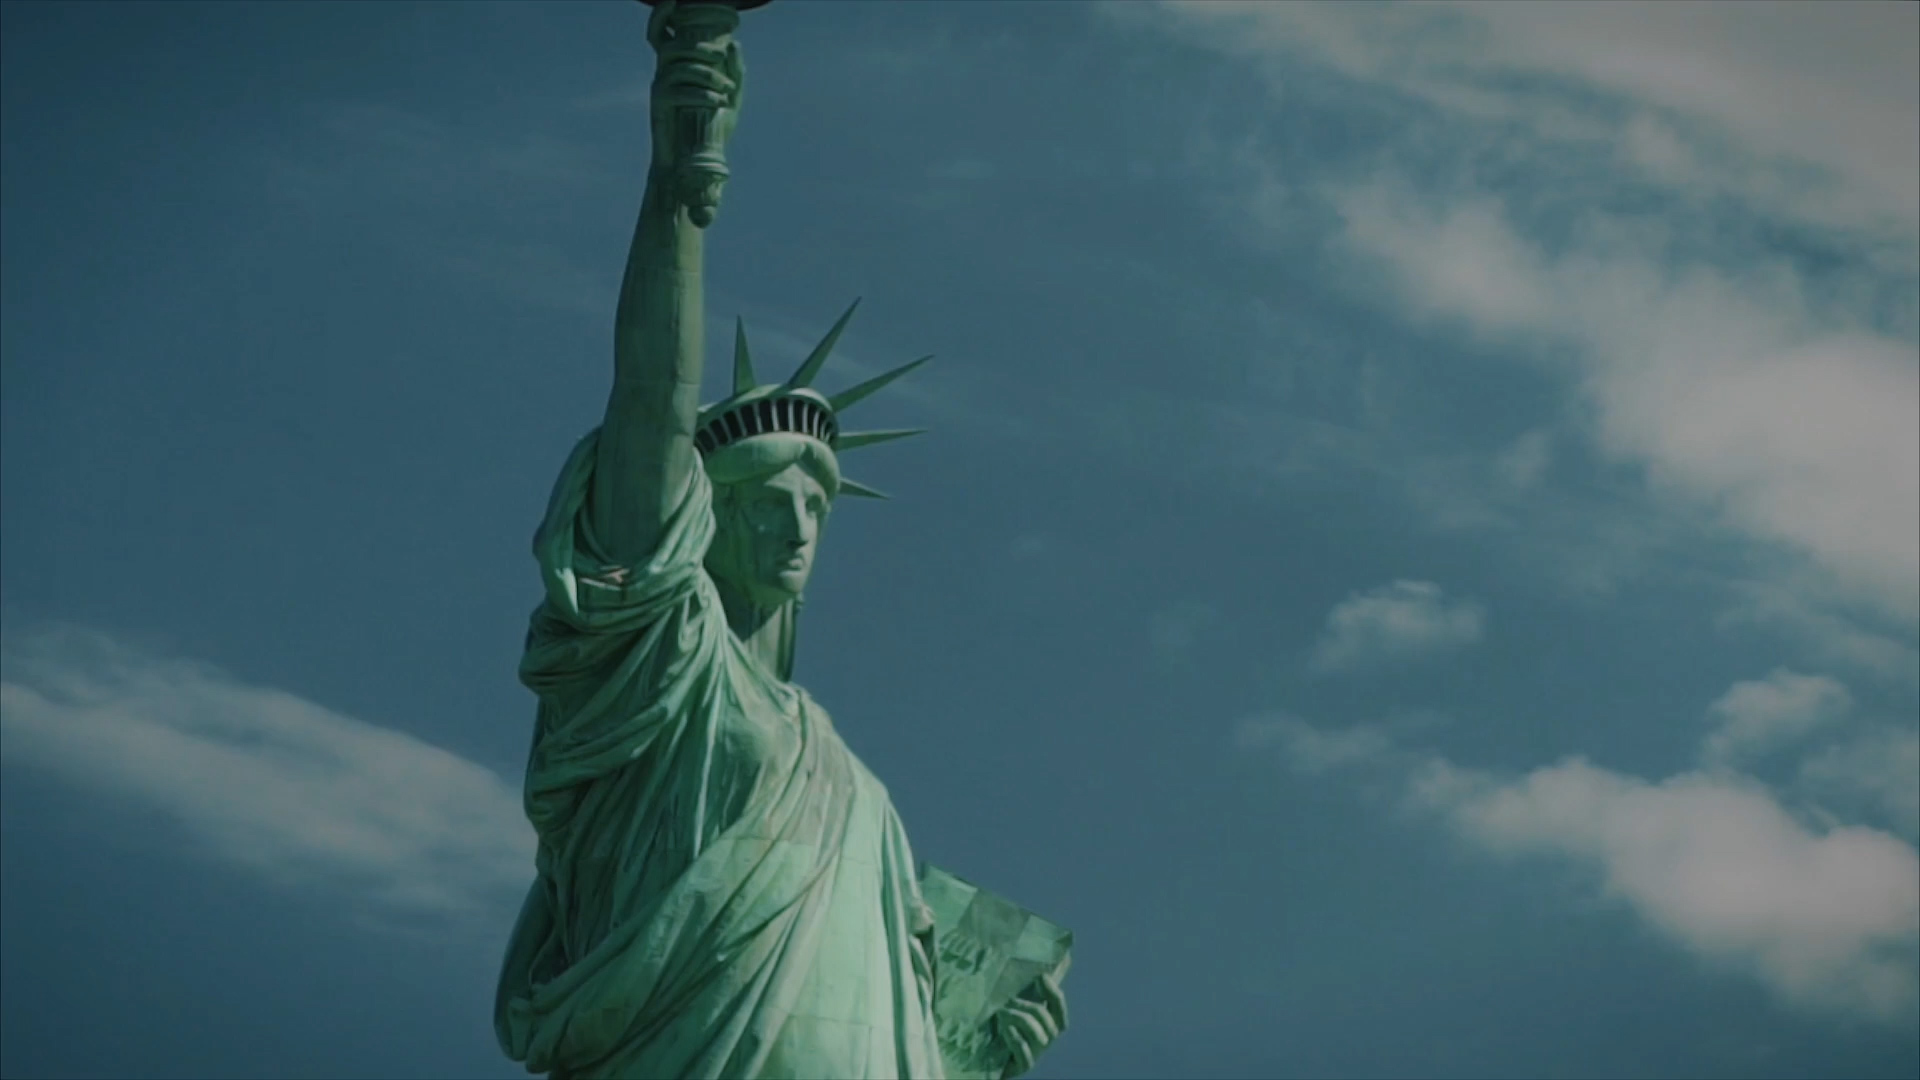 自由の女神像 ニューヨーク